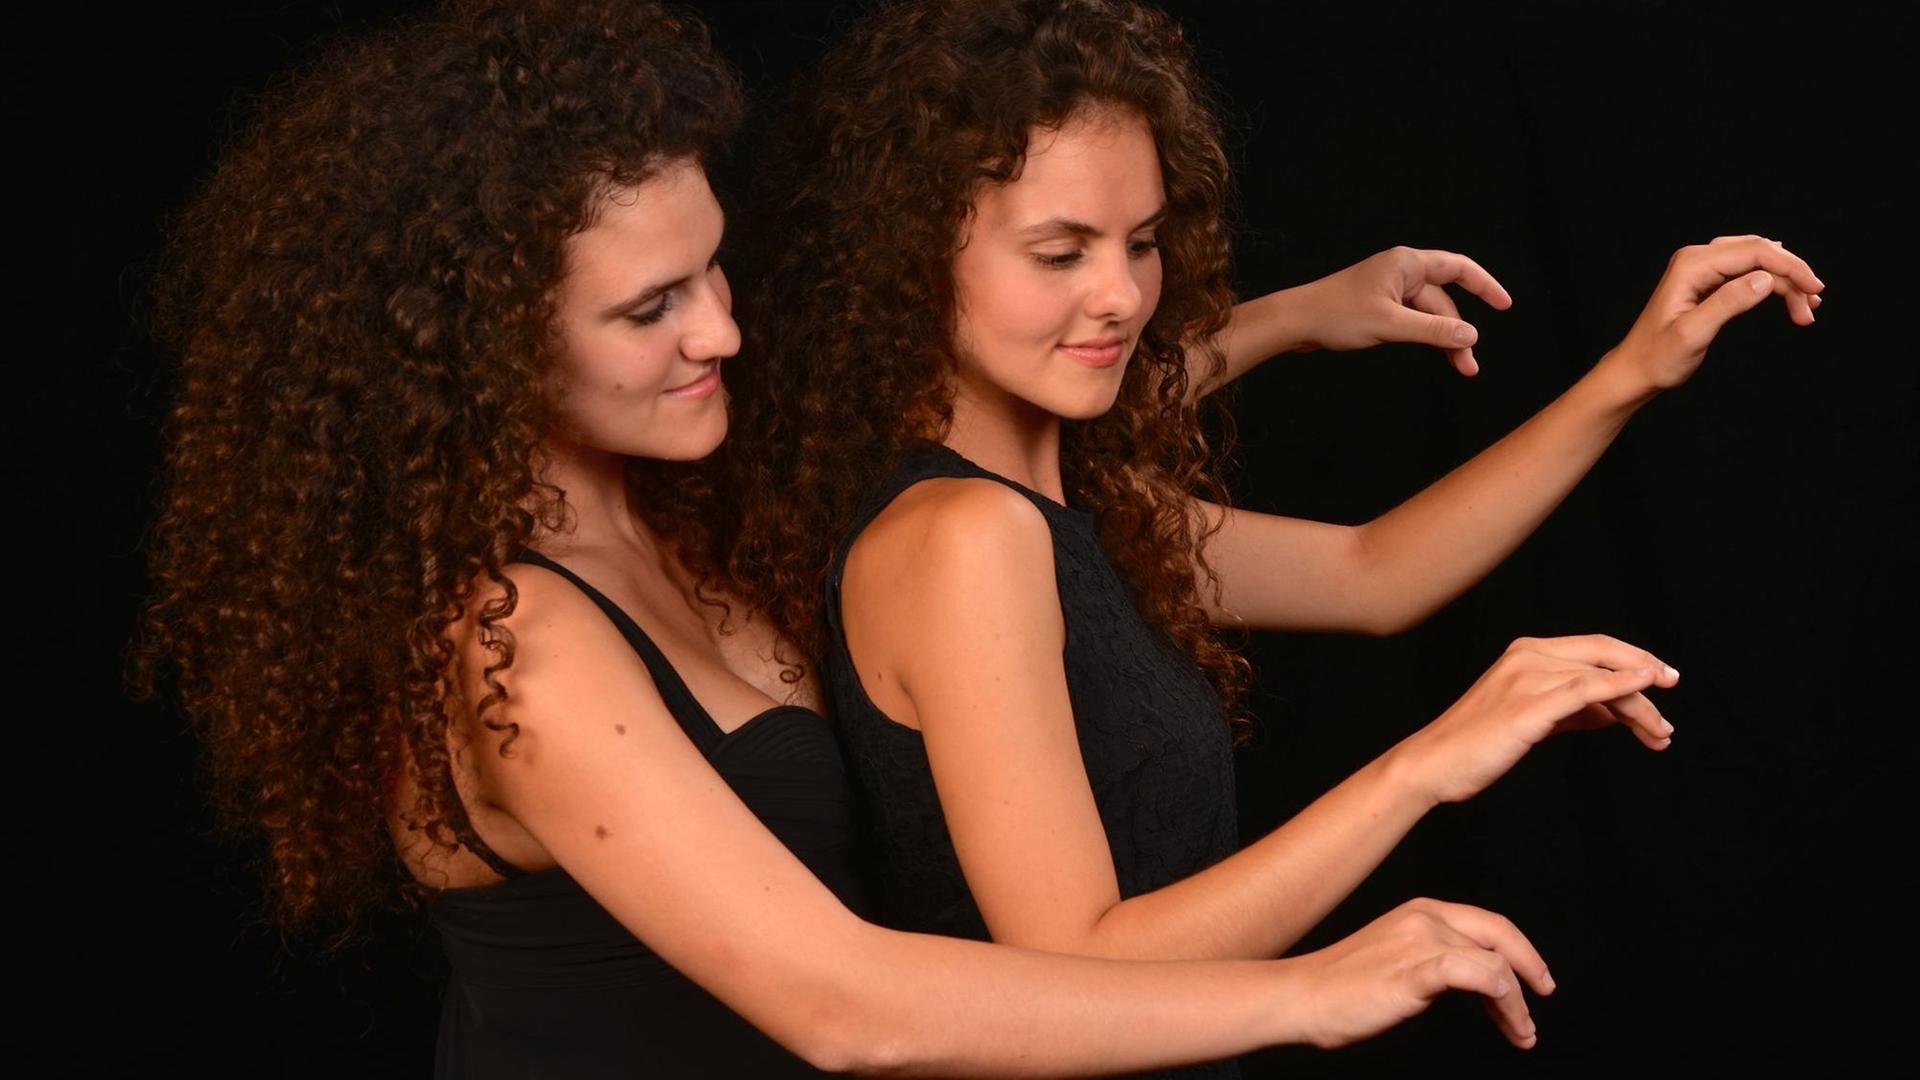 Zwei junge Frauen in schwarzen Kleidern sitzen hintereinander an einem imgaginierten Flügel und spielen.